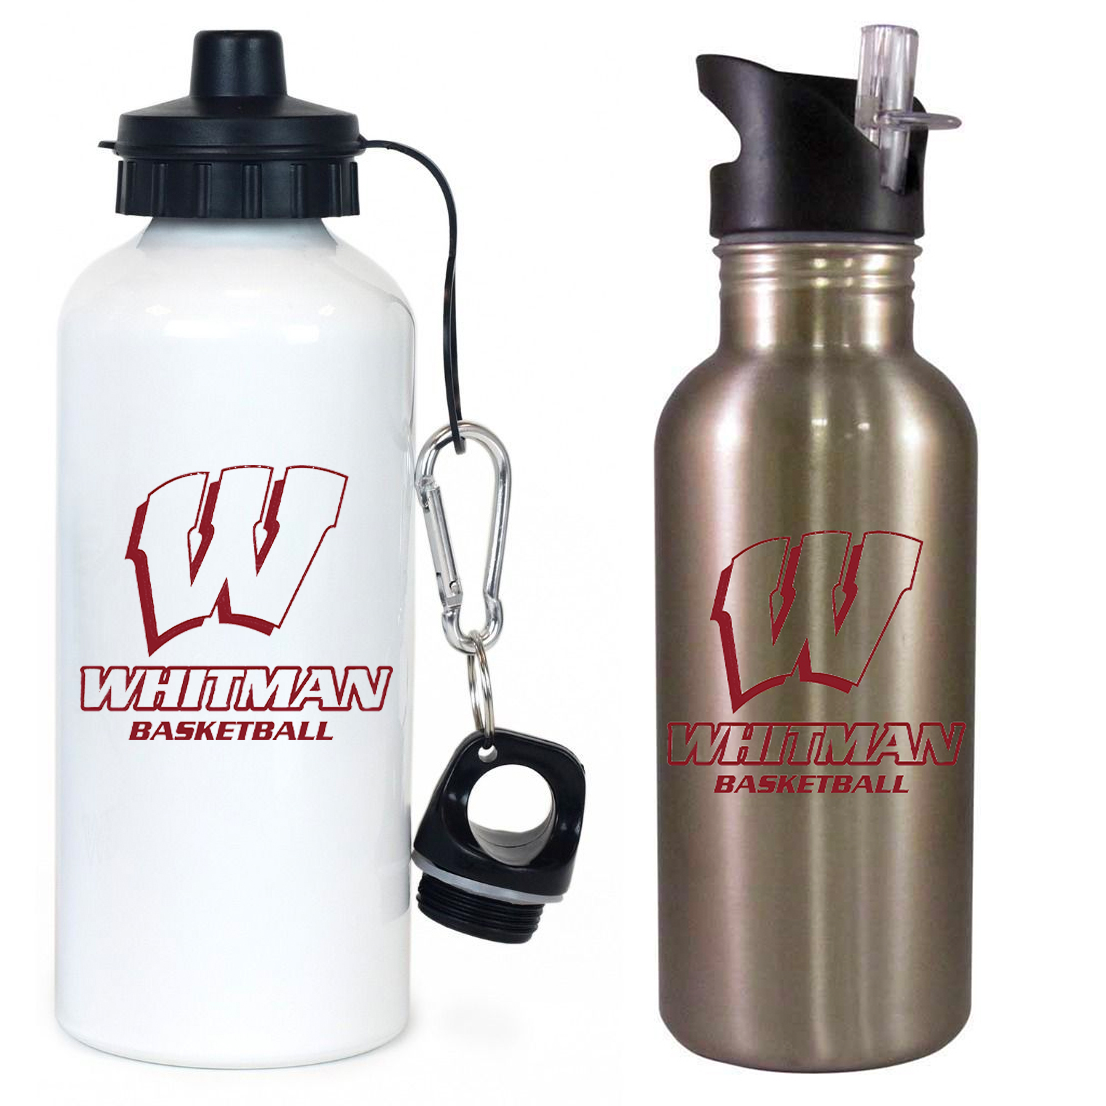 Whitman Basketball Team Water Bottle